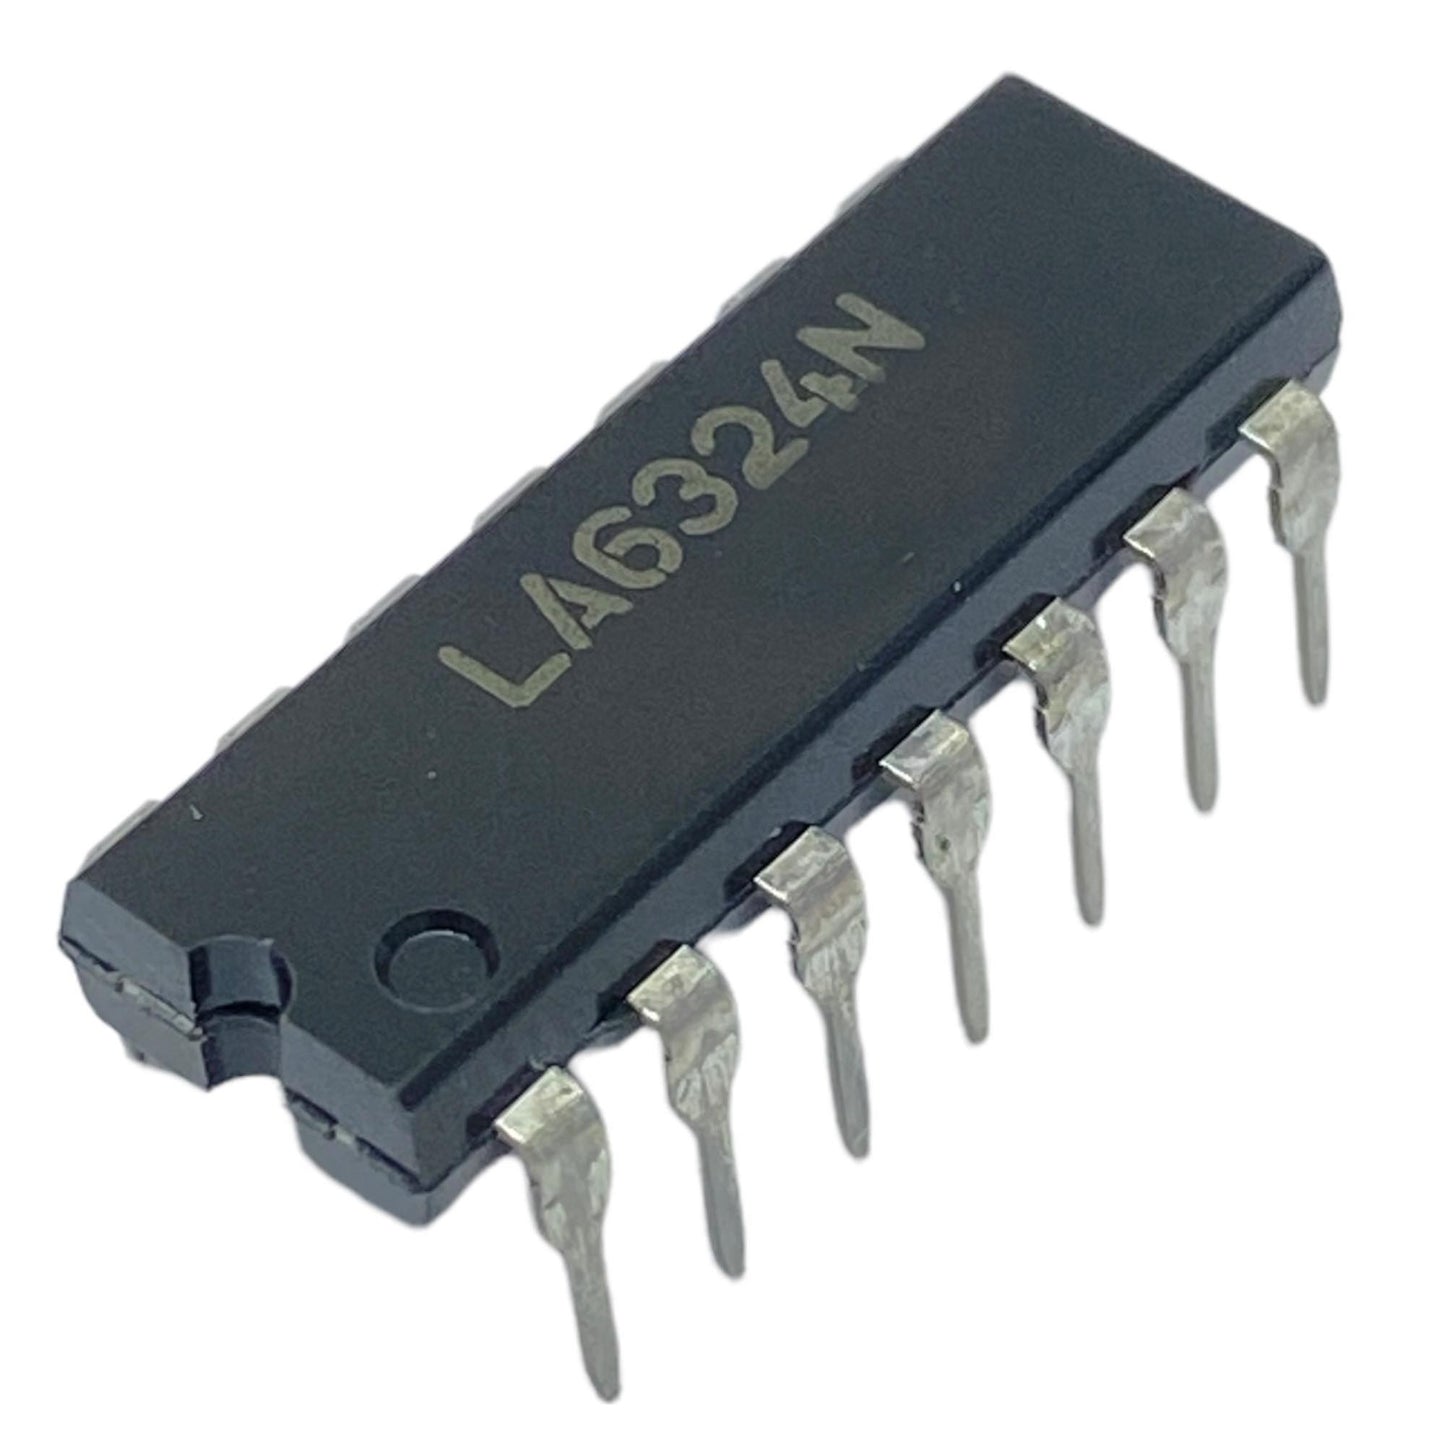 LA6324N componente elettronico, circuito integrato, 14 contatti